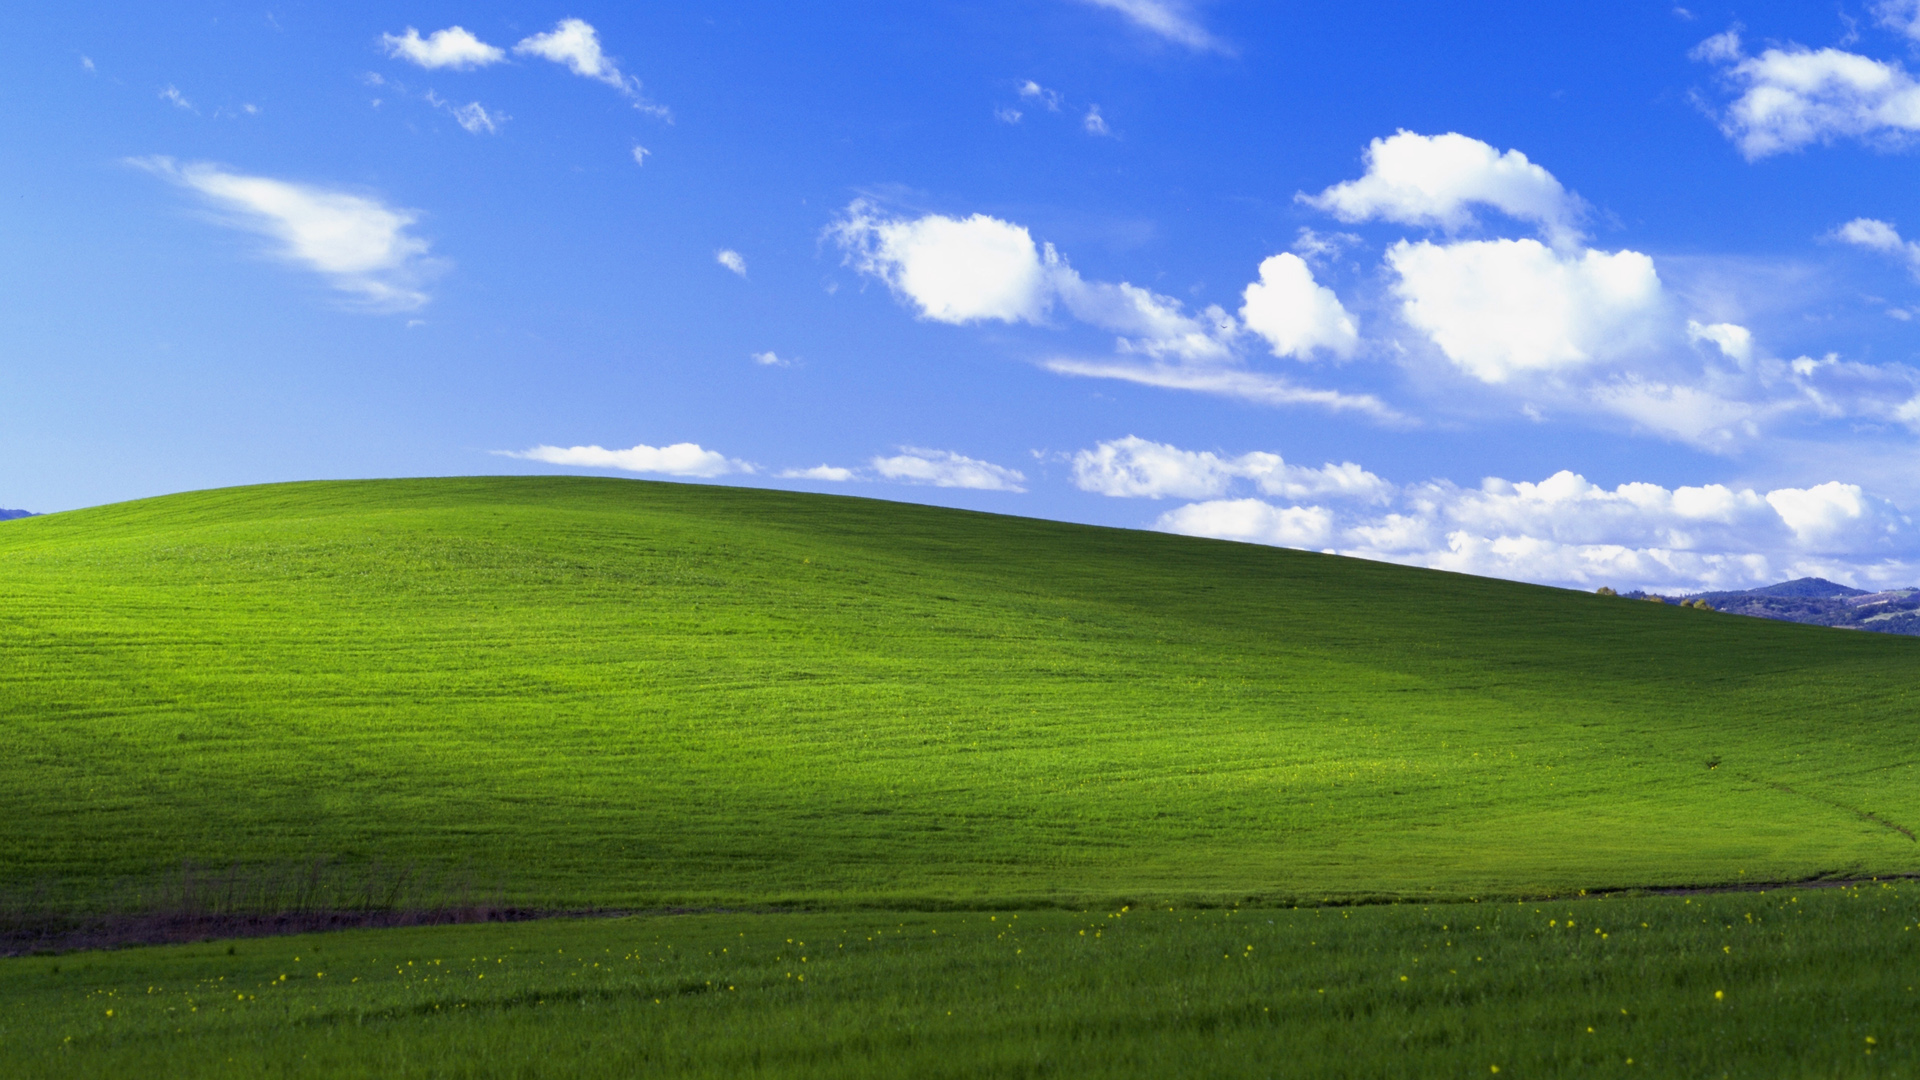 蓝天白云绿草地风景,windows xp默认风景经典桌面壁纸